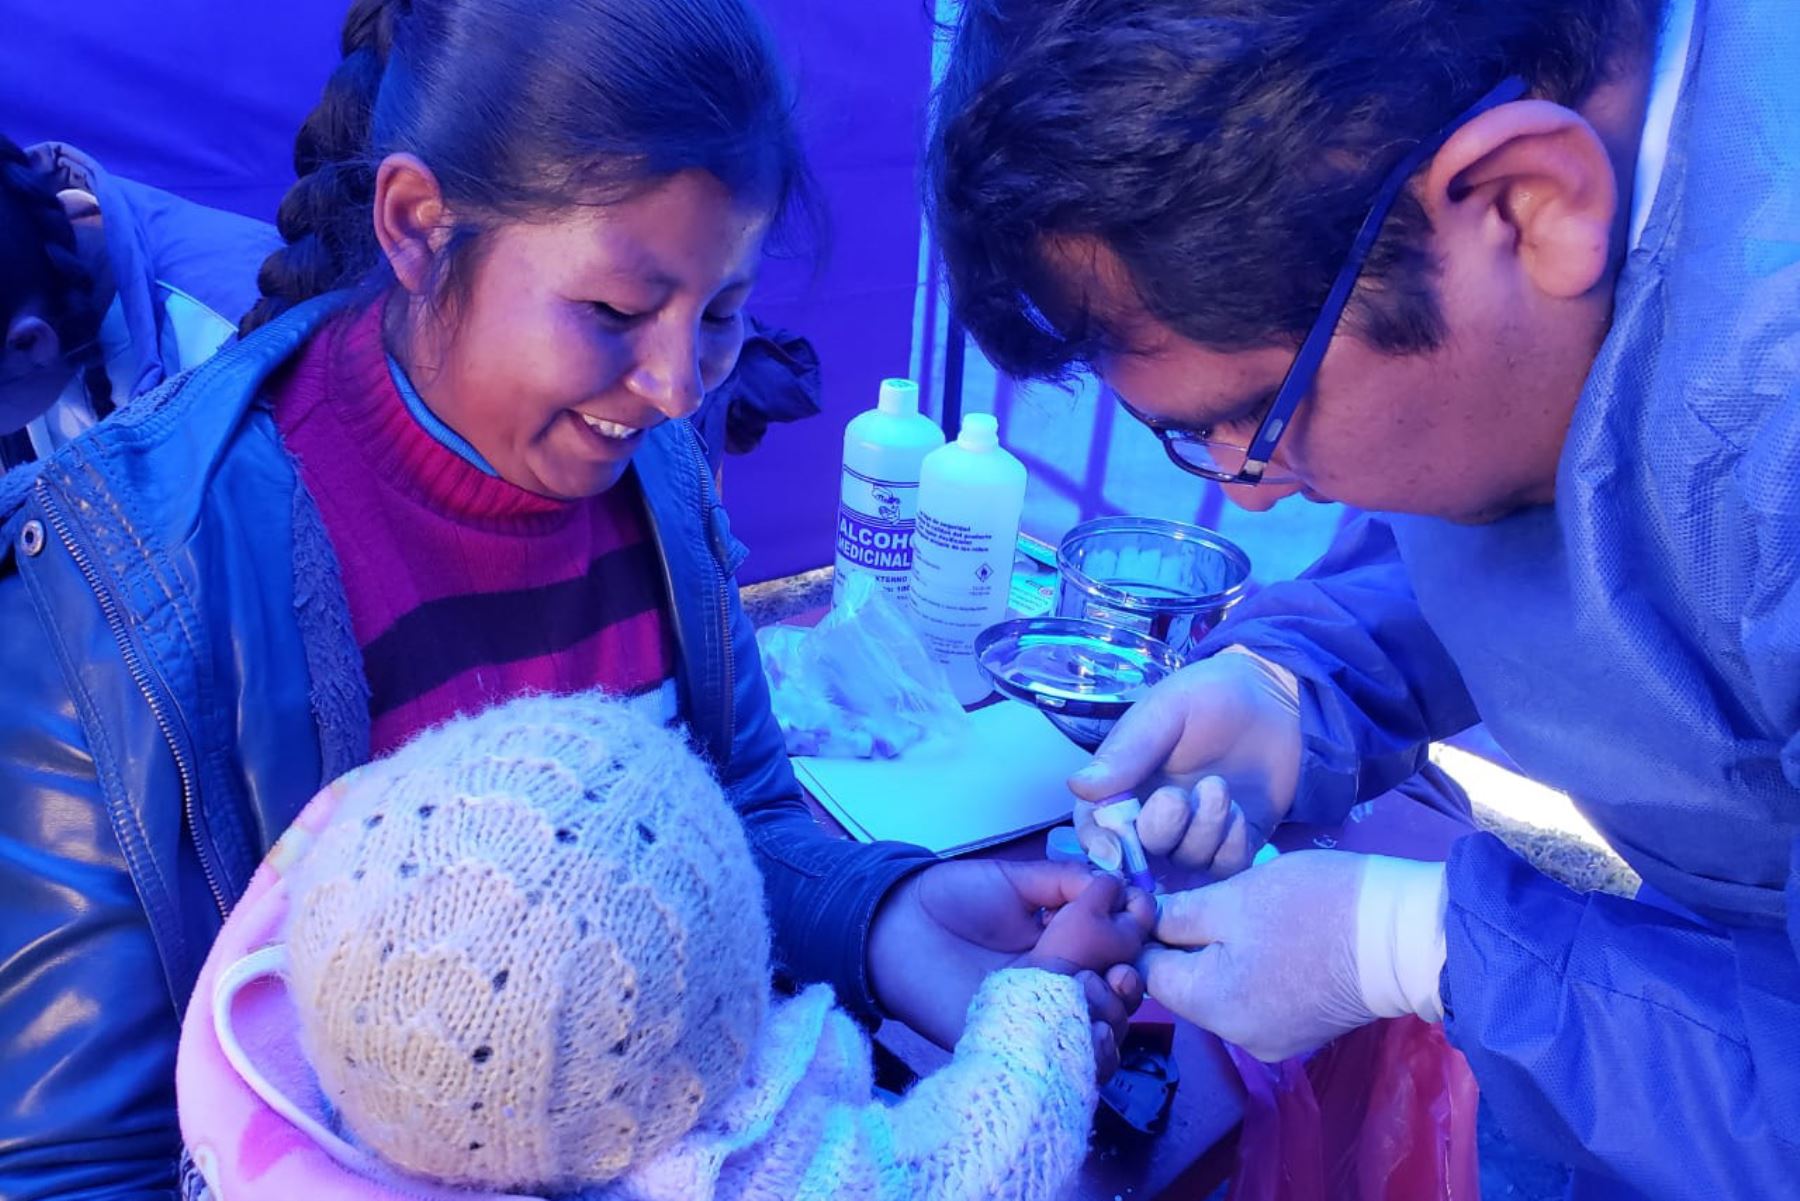 La anemia afecta a siete de cada diez niños entre 6 y 36 meses de edad en la región Puno. Es la incidencia más alta en el Perú.